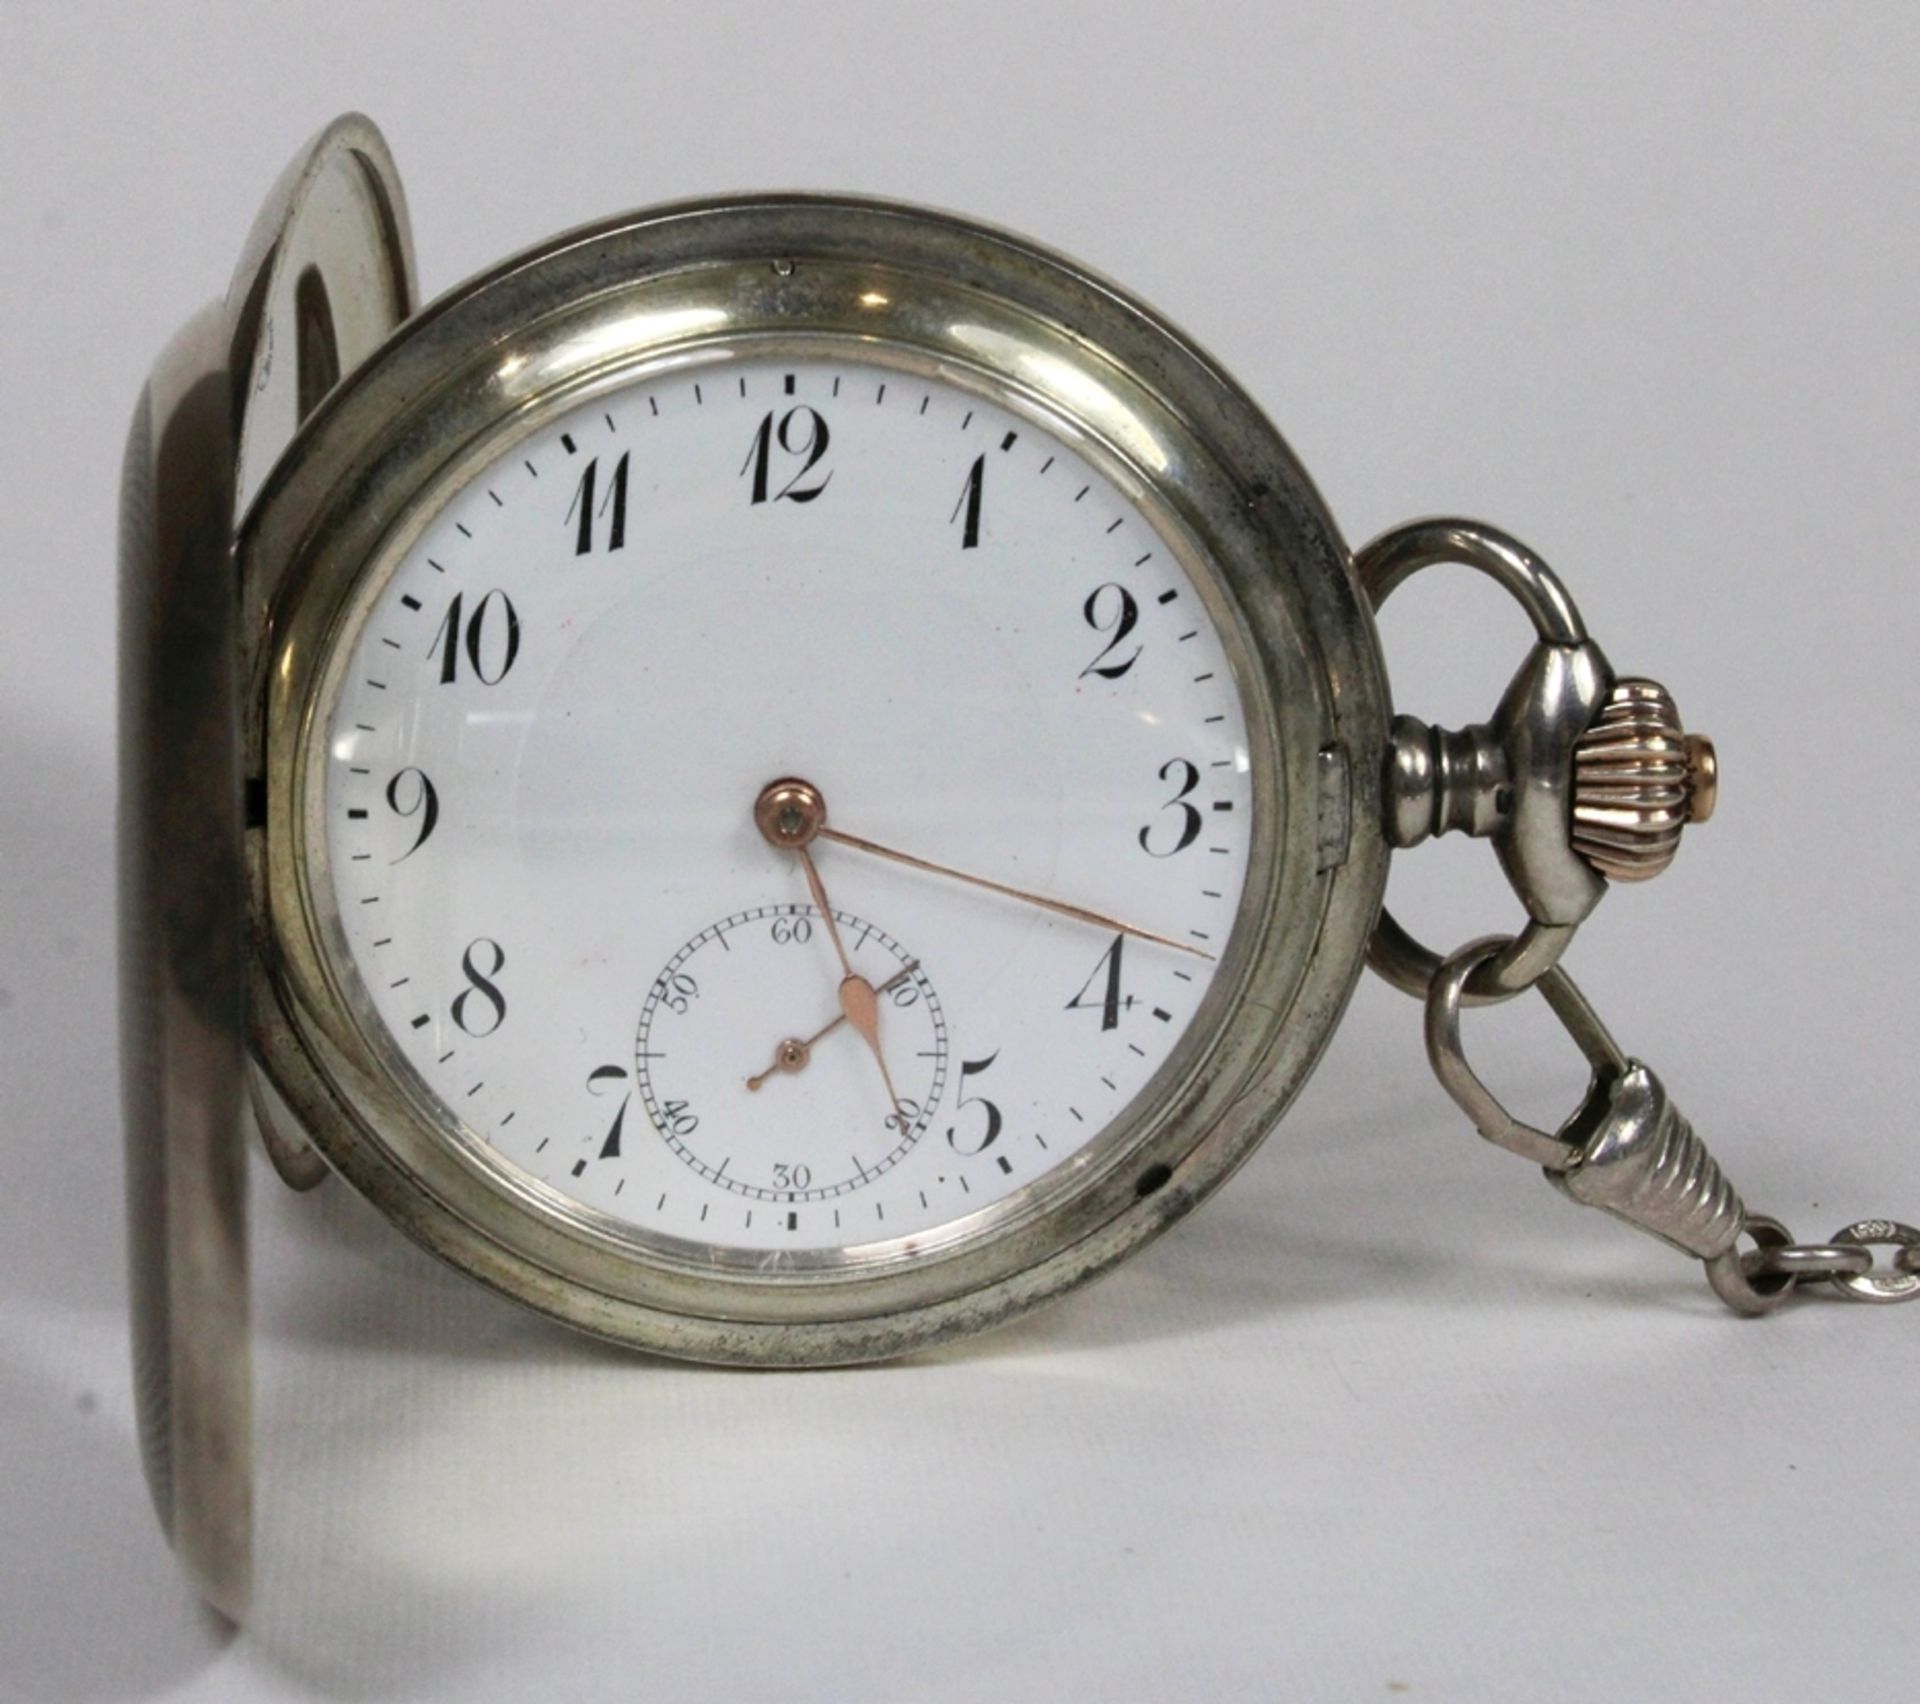 IWC Herrentaschenuhr, 1914, 800er Silber, Punze: Halbmond und Krone, mit silberner Uhrenkette, Mode